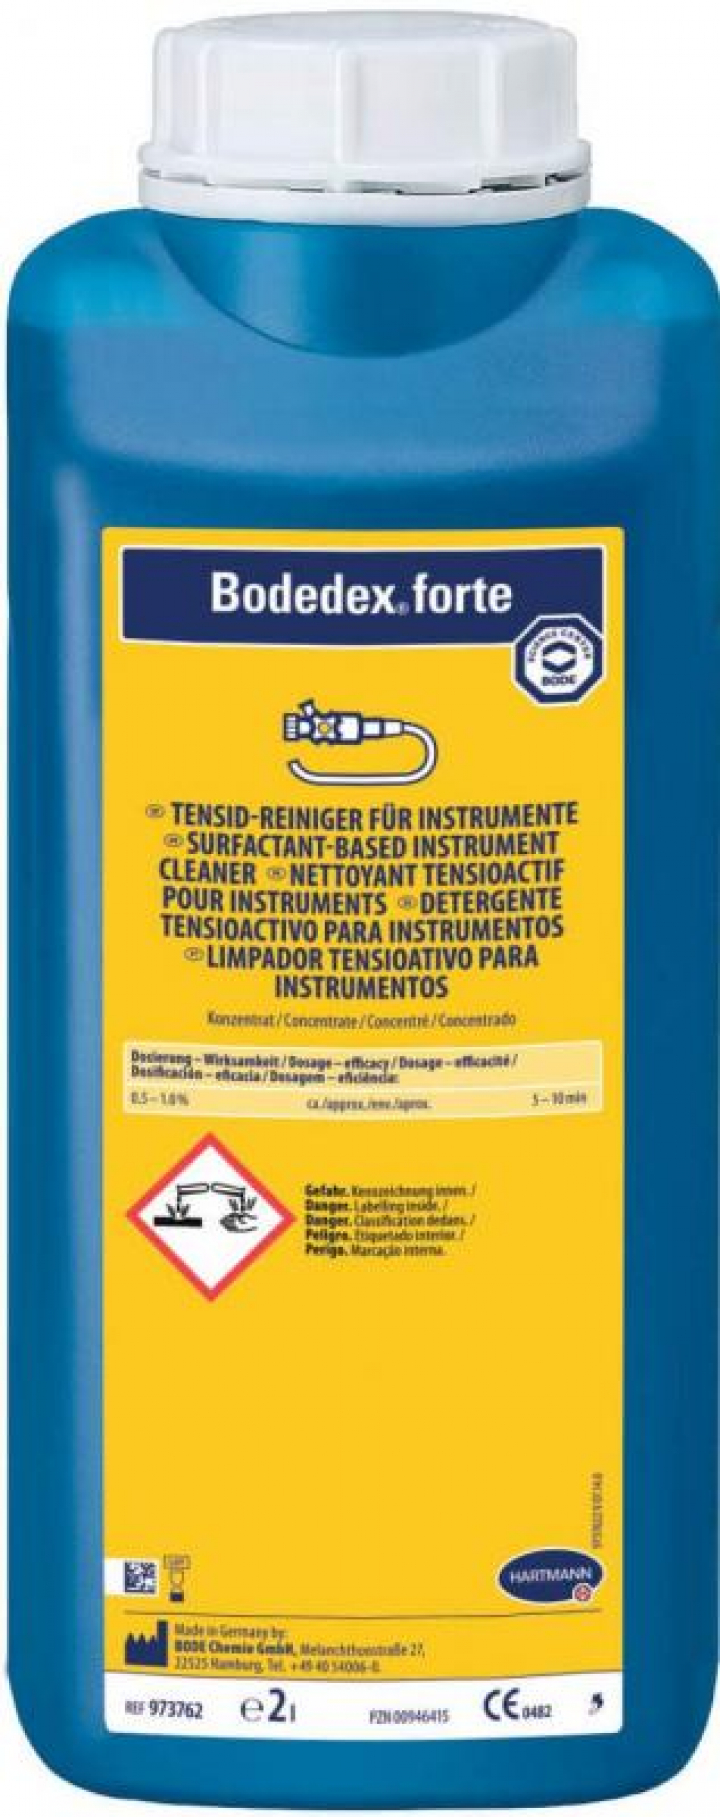 Detergente tensioactivo concentrado para instrumentos com forte poder de limpeza Bodedex forte 2Lt